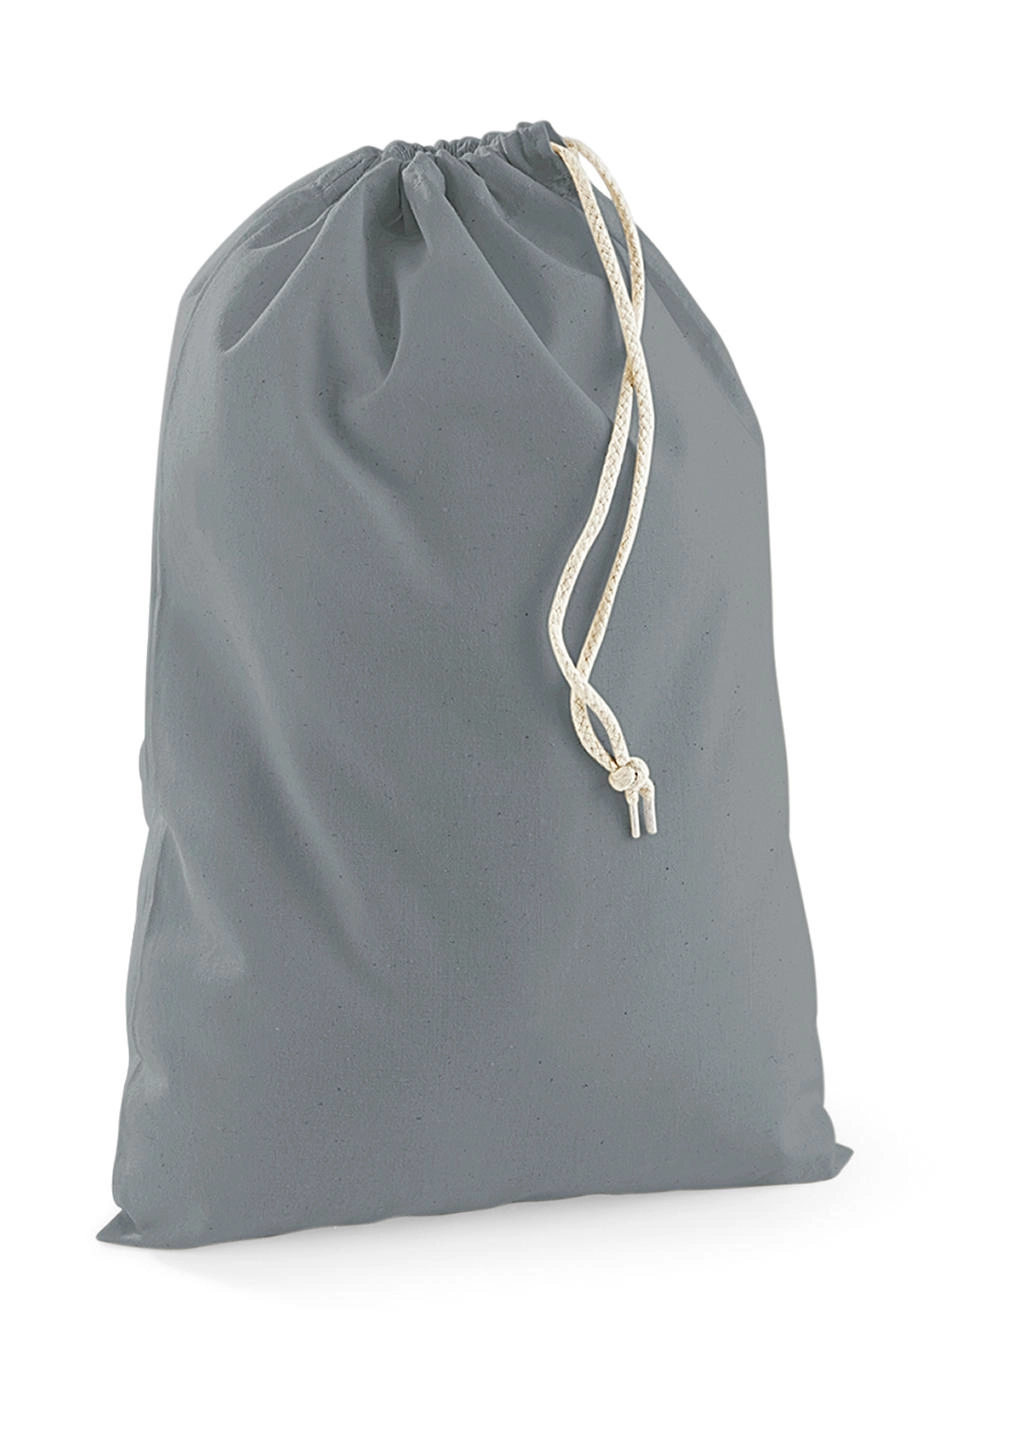 Cotton Stuff Bag zum Besticken und Bedrucken in der Farbe Pure Grey mit Ihren Logo, Schriftzug oder Motiv.